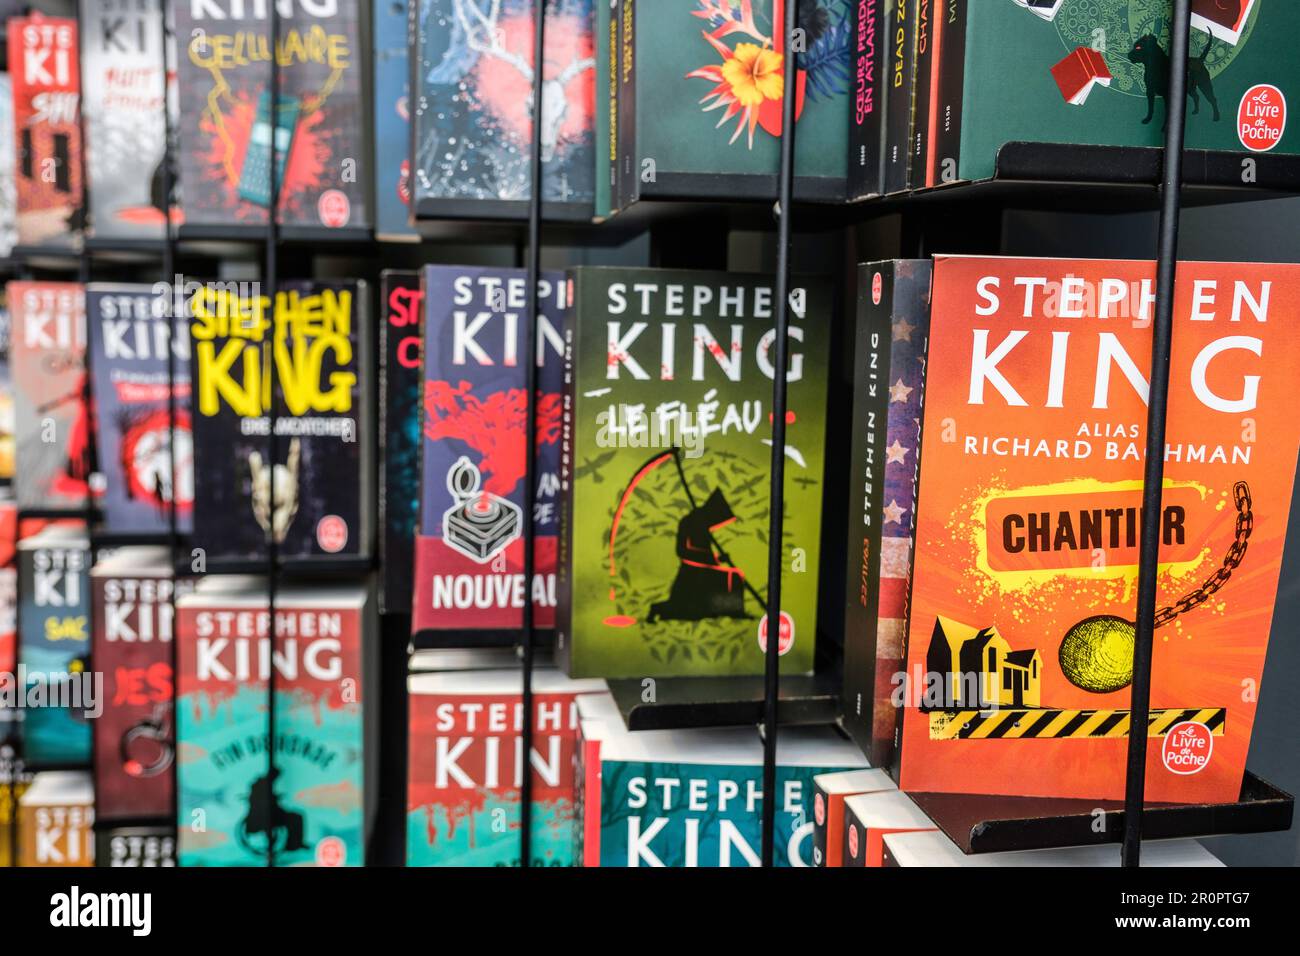 Foire du Livre de Bruxelles les gens se pressent autour des presentoirs 2023 Livres de Stephen King| Bruxelles Books fair 2023 - Stephen King's books Foto Stock